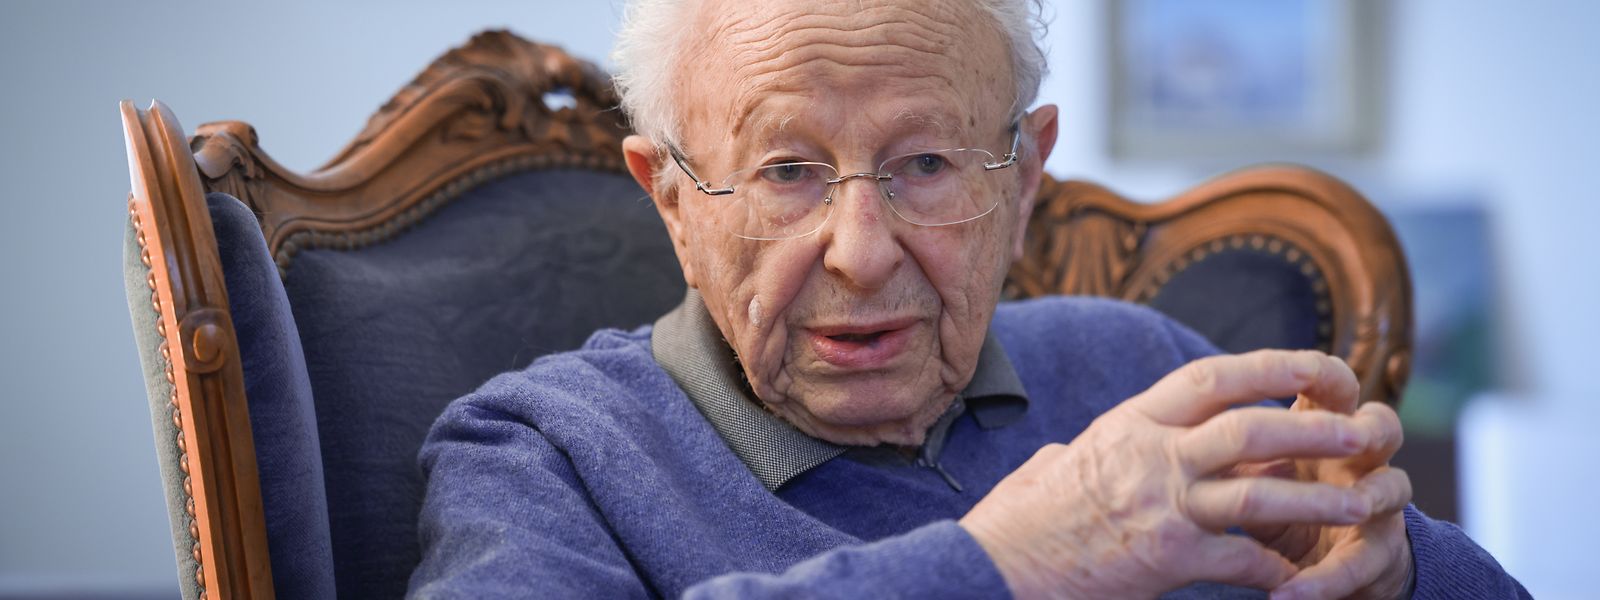 Heute ist Claude Marx 88 Jahre alt. Als der Zweite Weltkrieg ausbrach, war er noch ein Kind. Im Gespräch mit dem „Luxemburger Wort“ erinnert er sich an diese schwere Zeit.